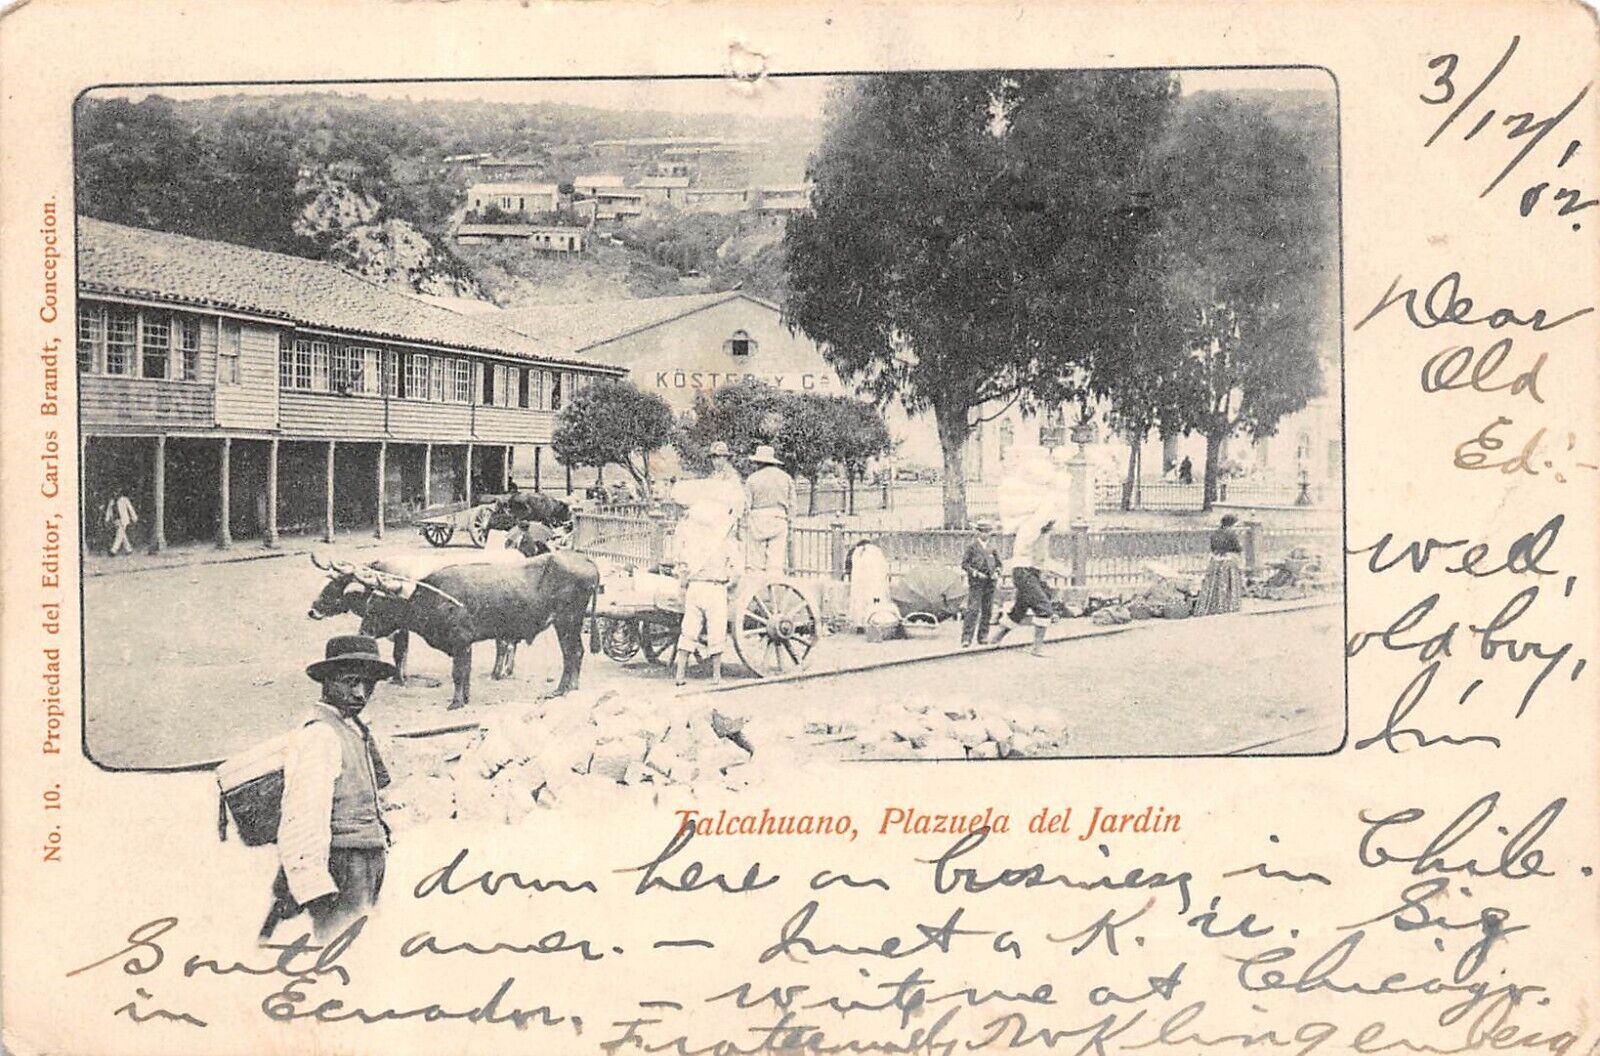 CHILE Talcahuano Plazuel del Jardin Town View Ox Cart 1902 UDB Postcard 9473